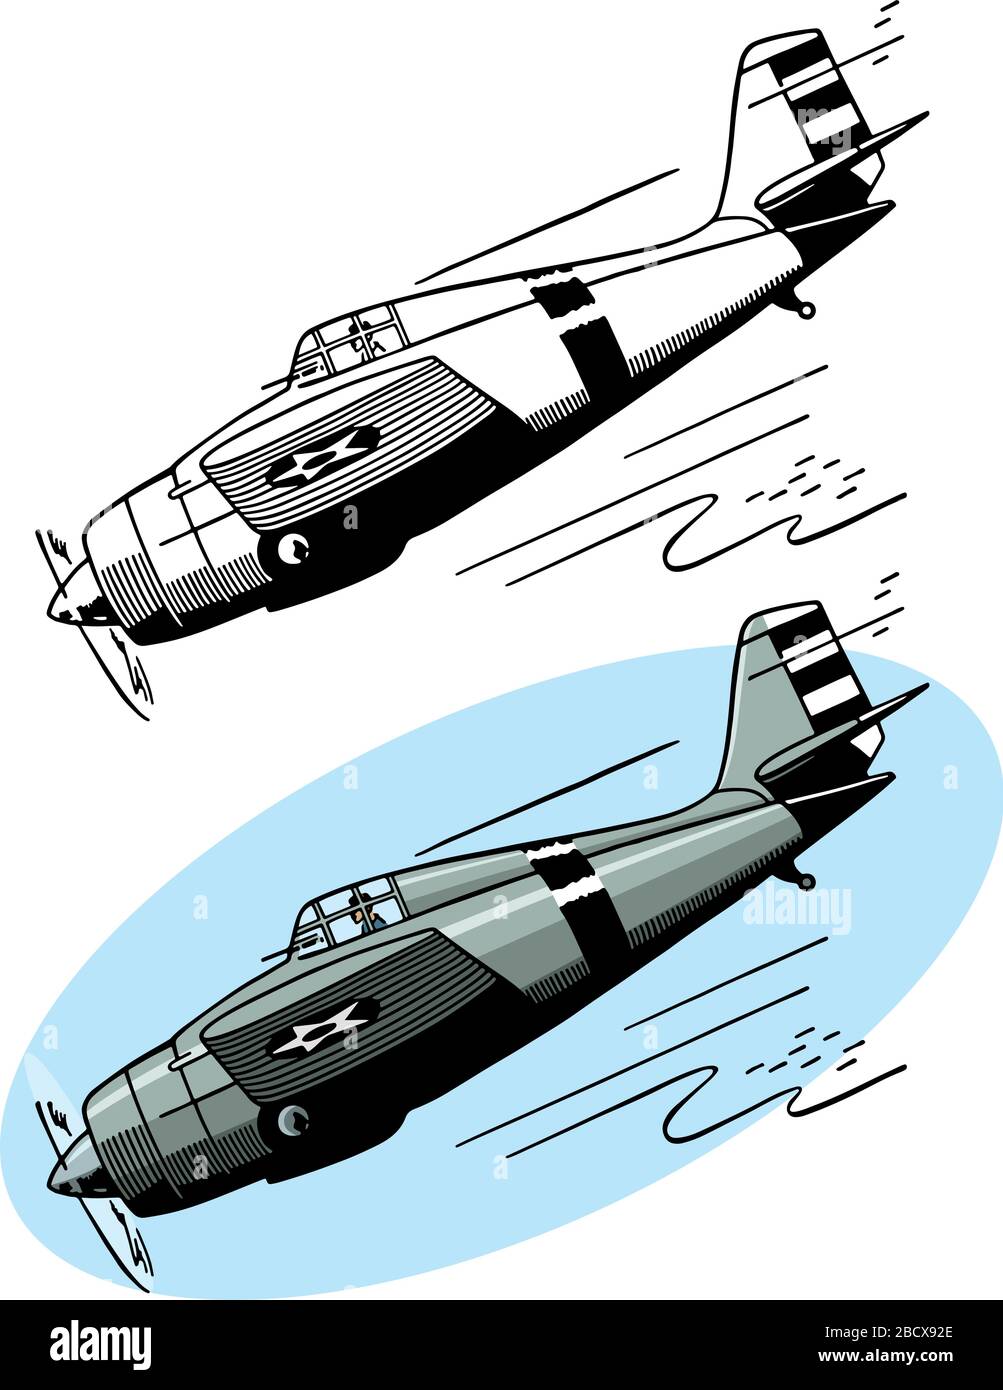 Eine Zeichnung eines amerikanischen Kampfflugzeugs F4F Wildcat aus der Zeit des zweiten Weltkriegs. Stock Vektor